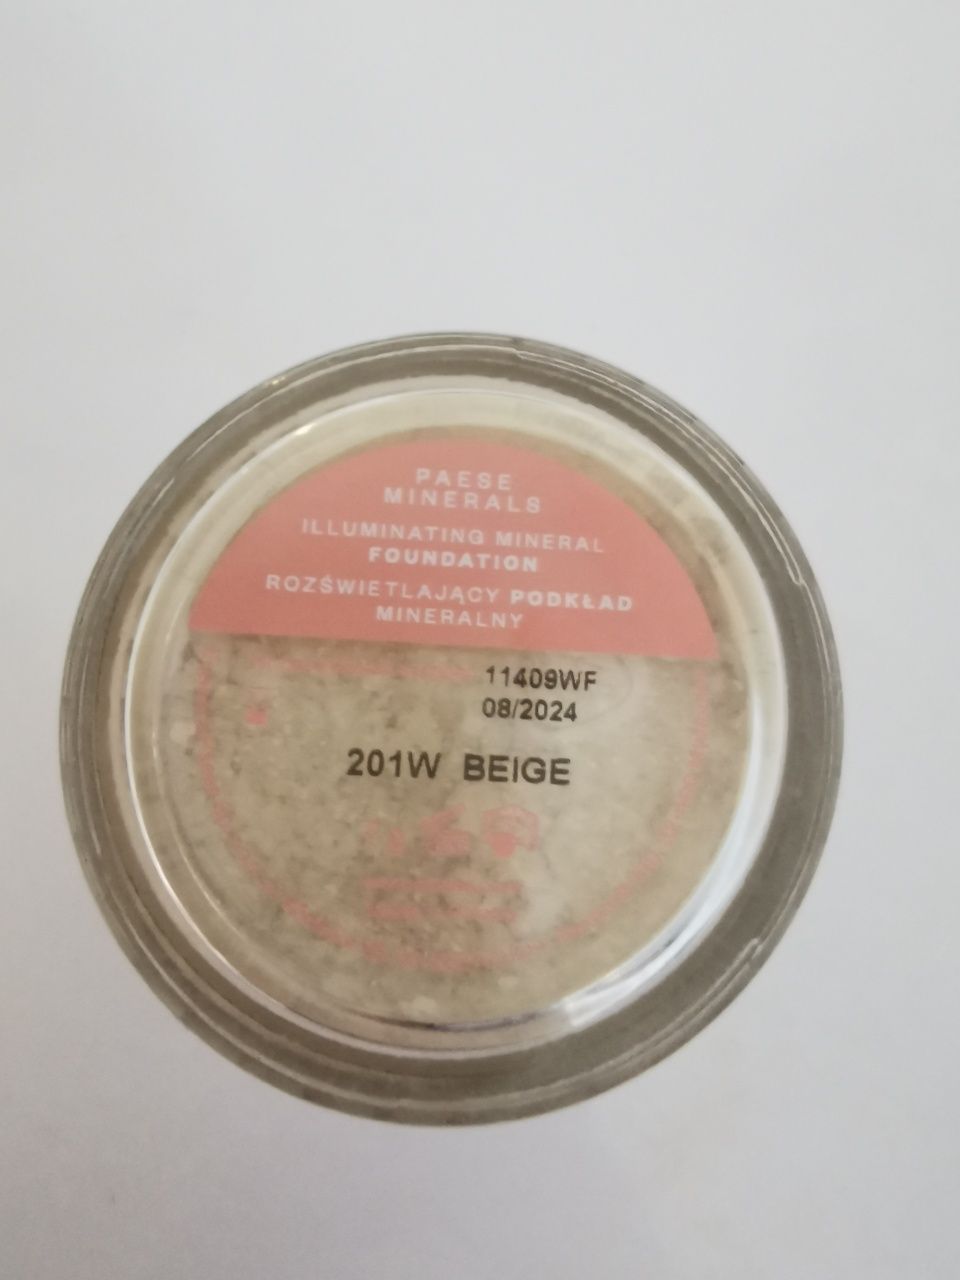 PAESE Minerals rozświetlający podkład mineralny/201W/Beige